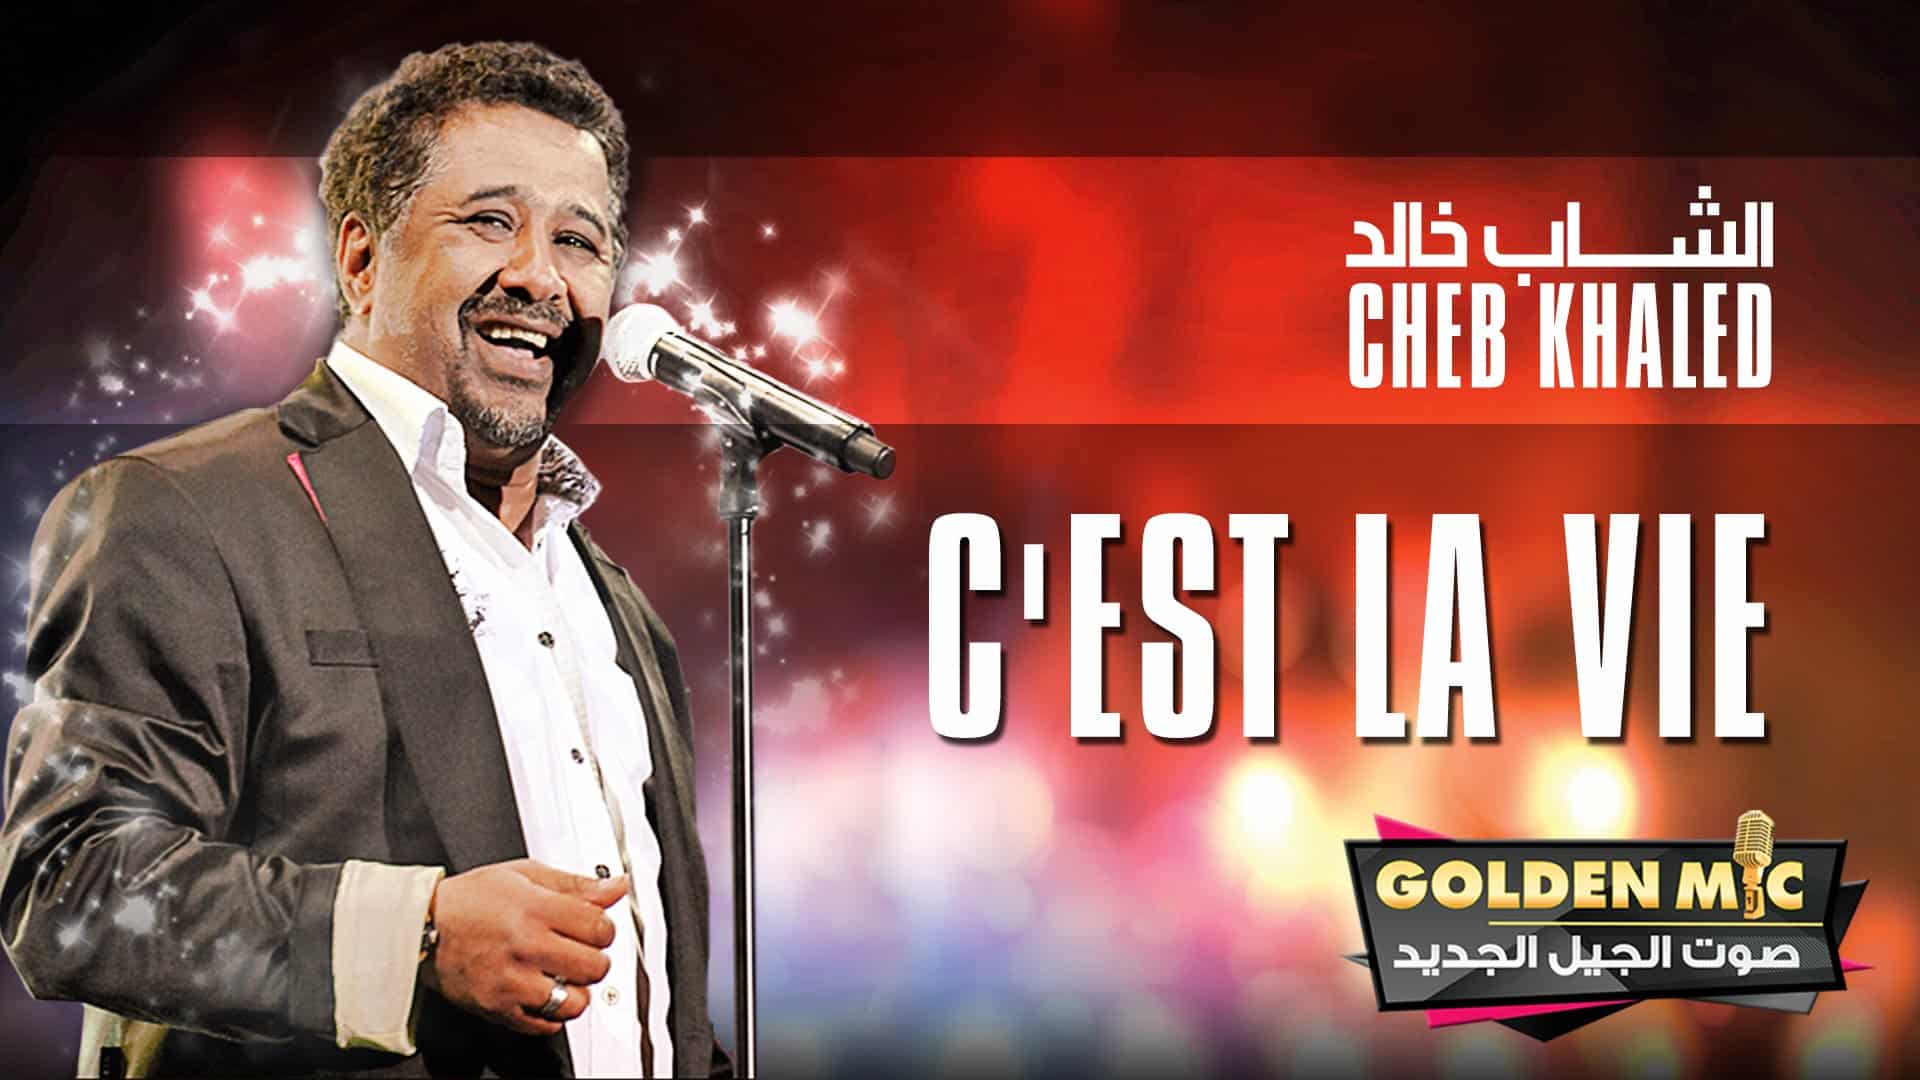 C'est la vie Халед. Cheb Khaled - c'est la vie. Best of Халед. Cheb Khaled-Sahra. Est la vie khaled